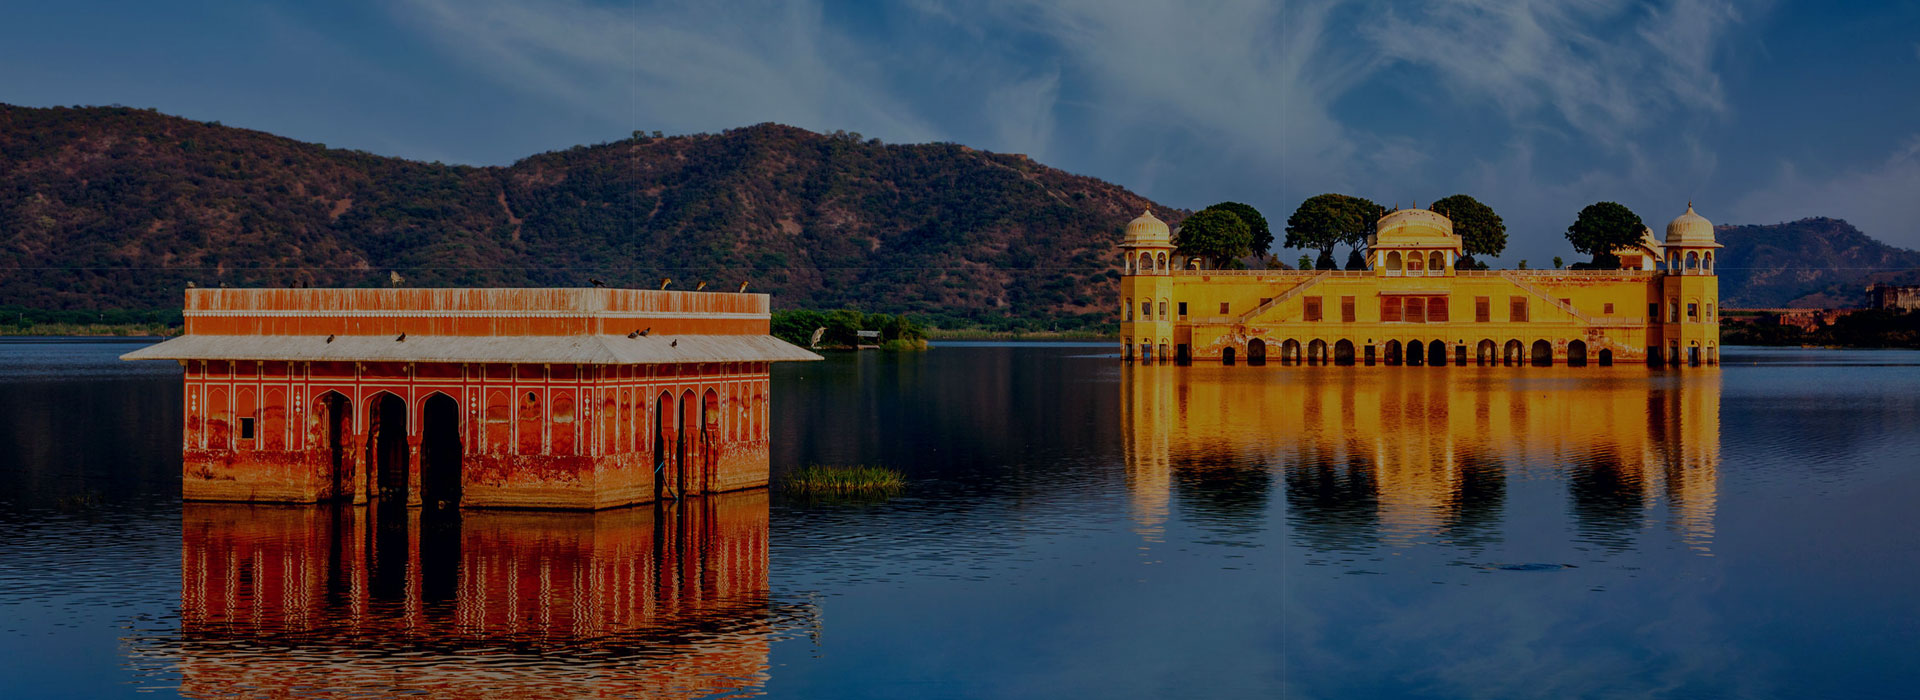 Delhi, Agra and Jaipur Tour by Car – 4N5D